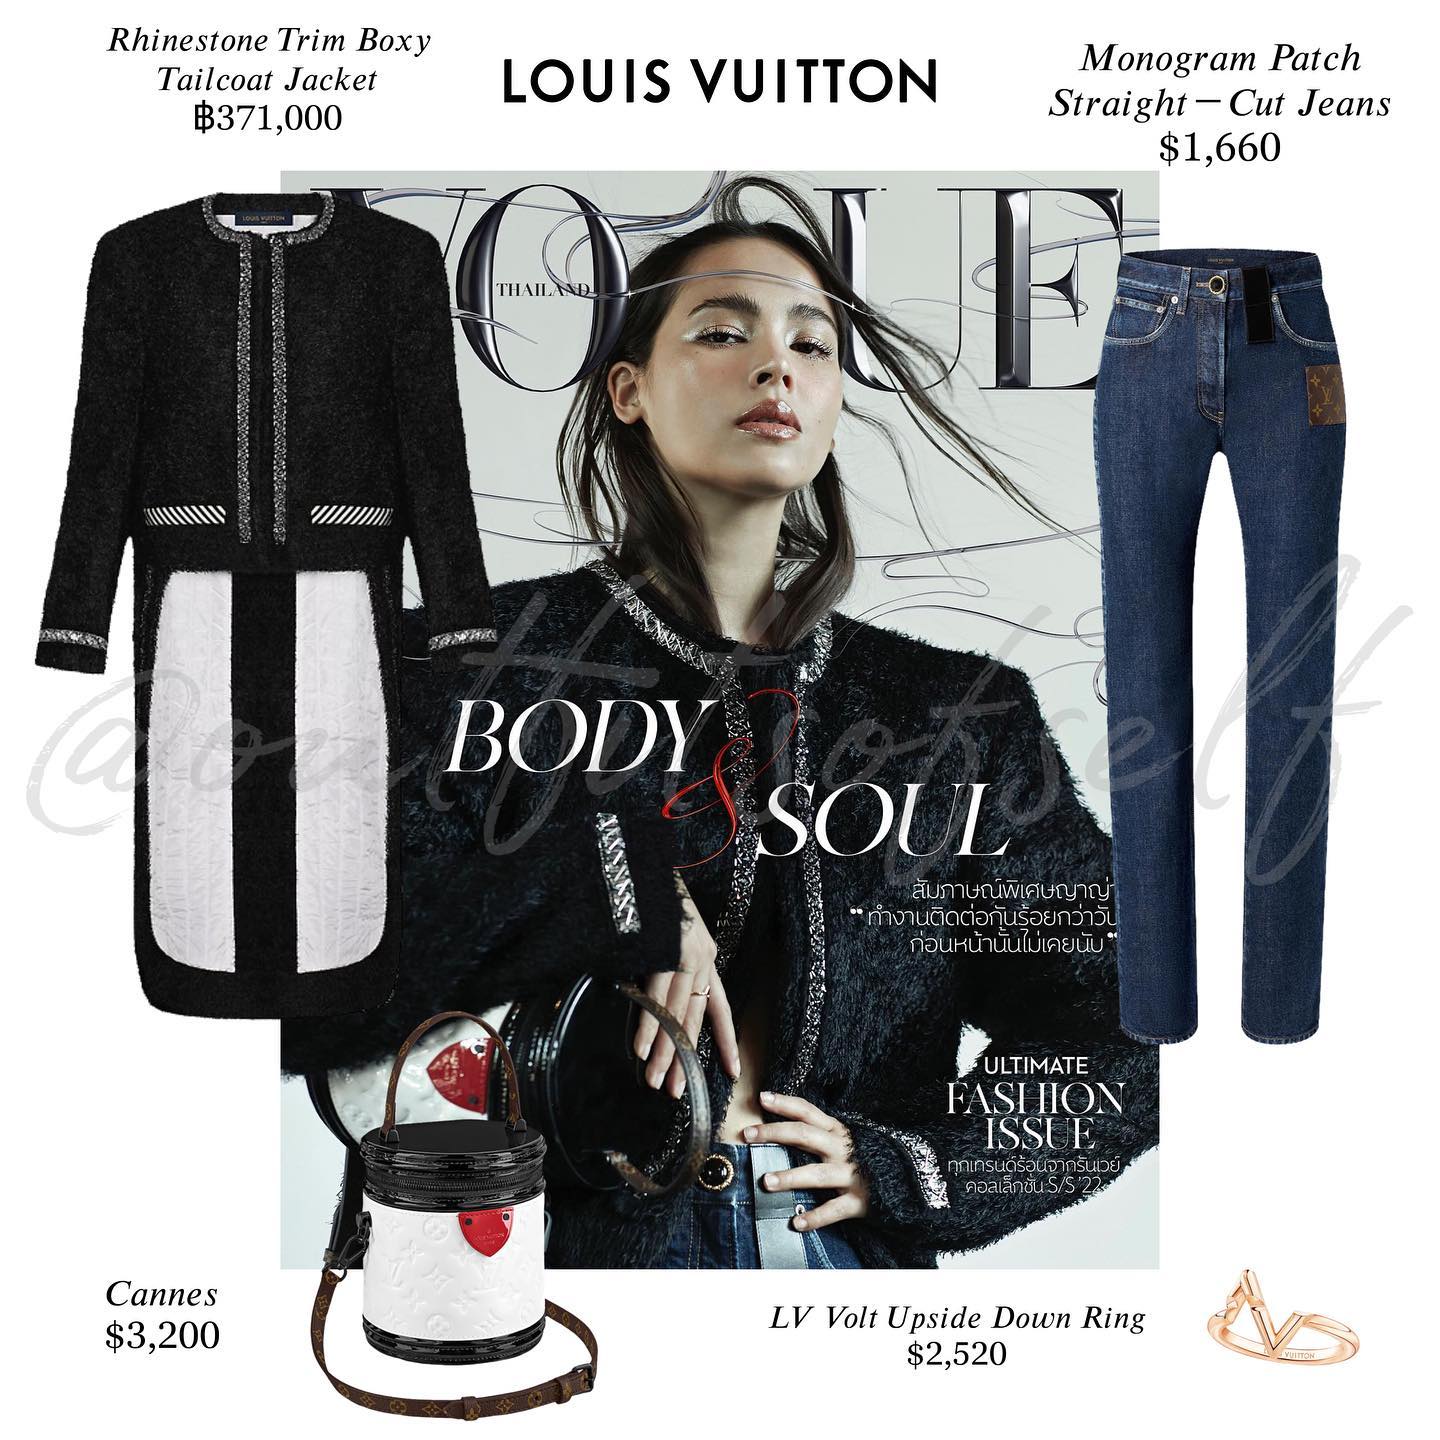 Louis Vuitton Monogram Patch Straight-Cut Jeans